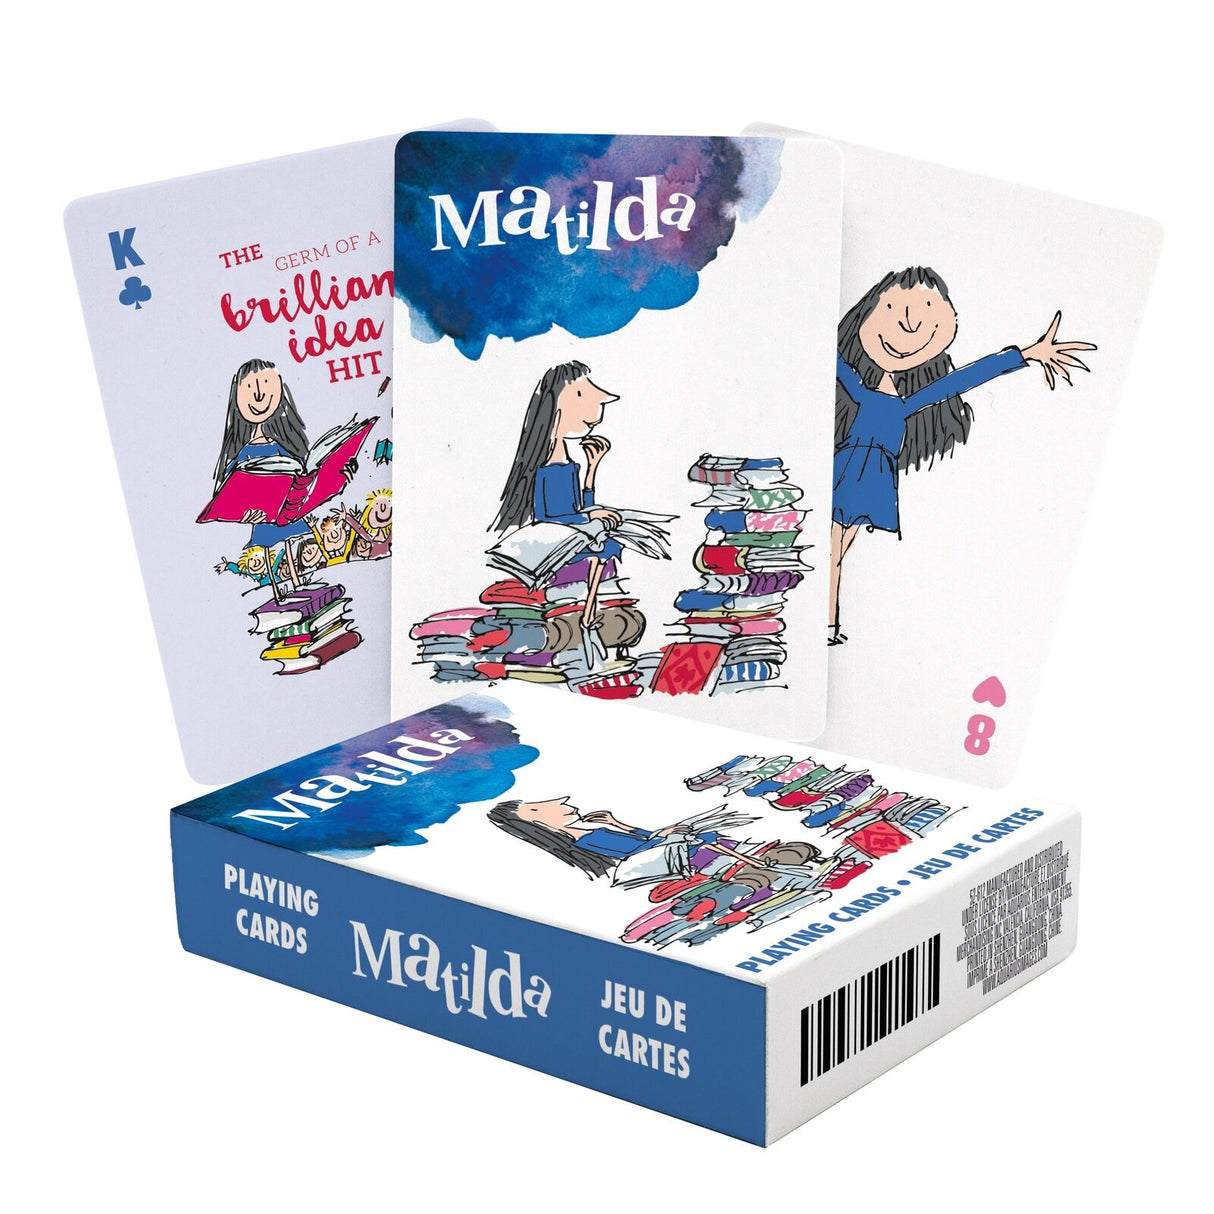 Roald Dahl Matilda Playing Cards